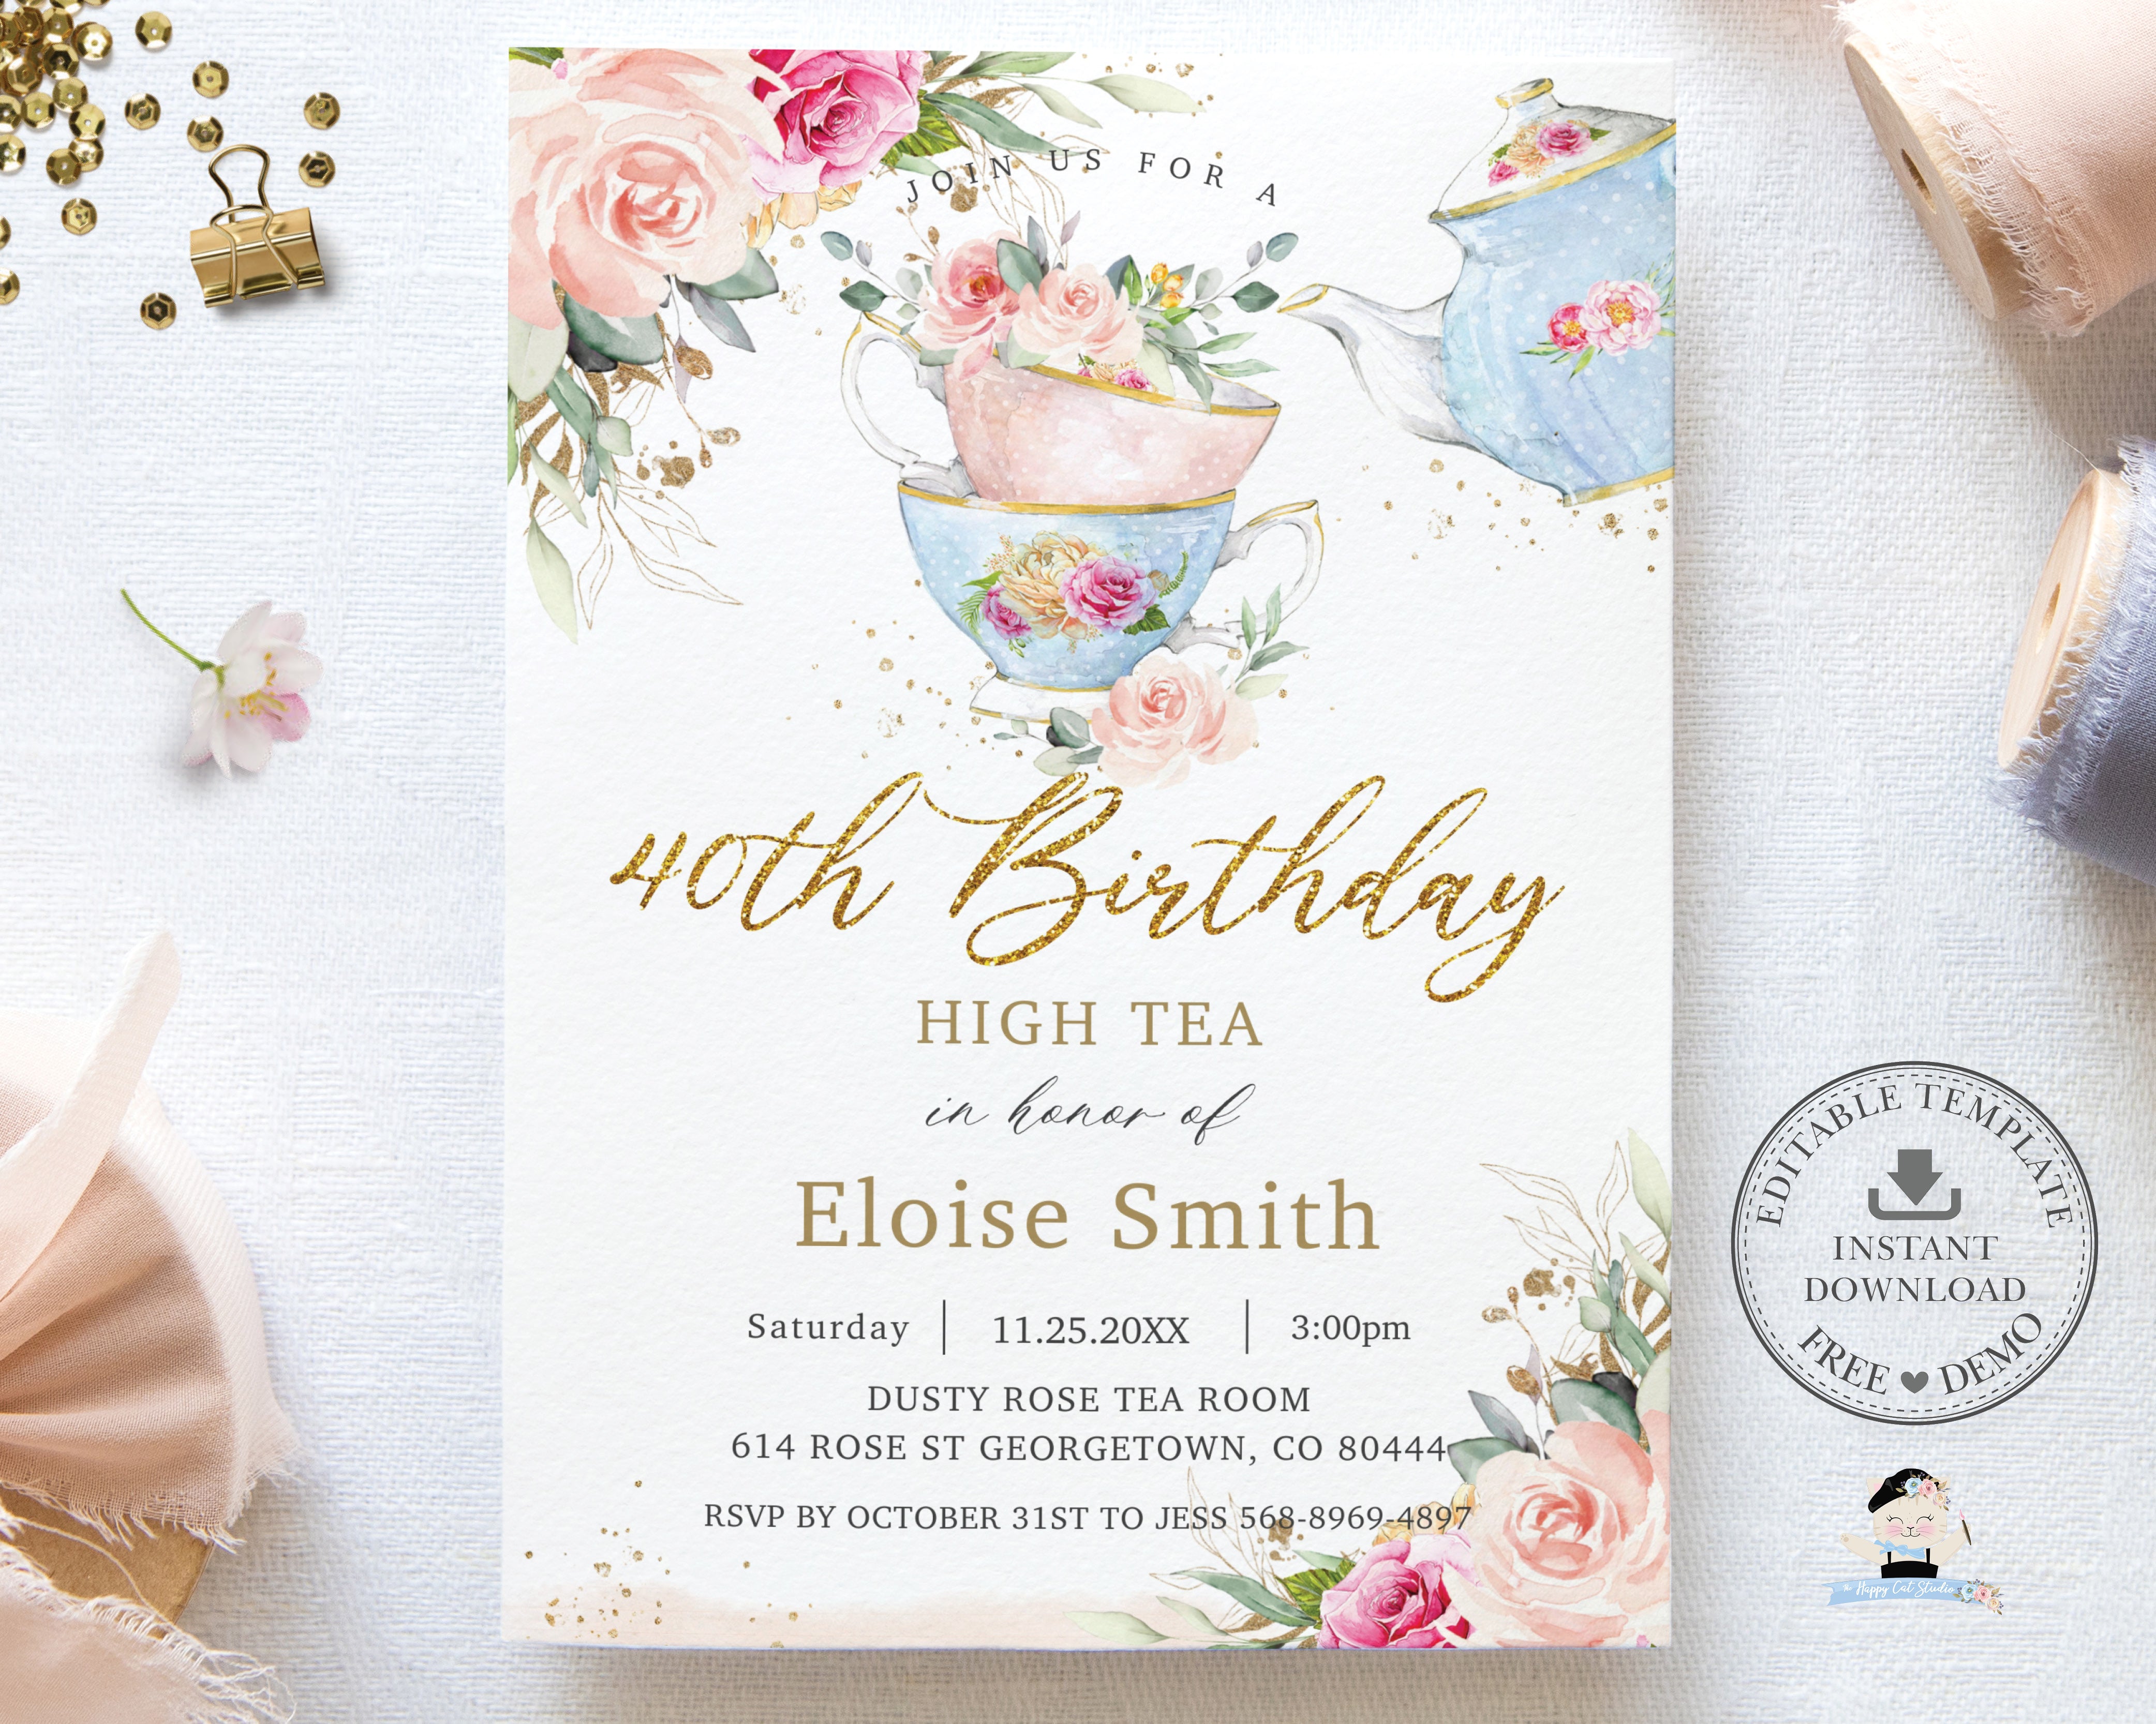 Exquisite Custom Wedding Invitation Cards Instant Download Printable  Invitation Template Elegant Wedding Invites 